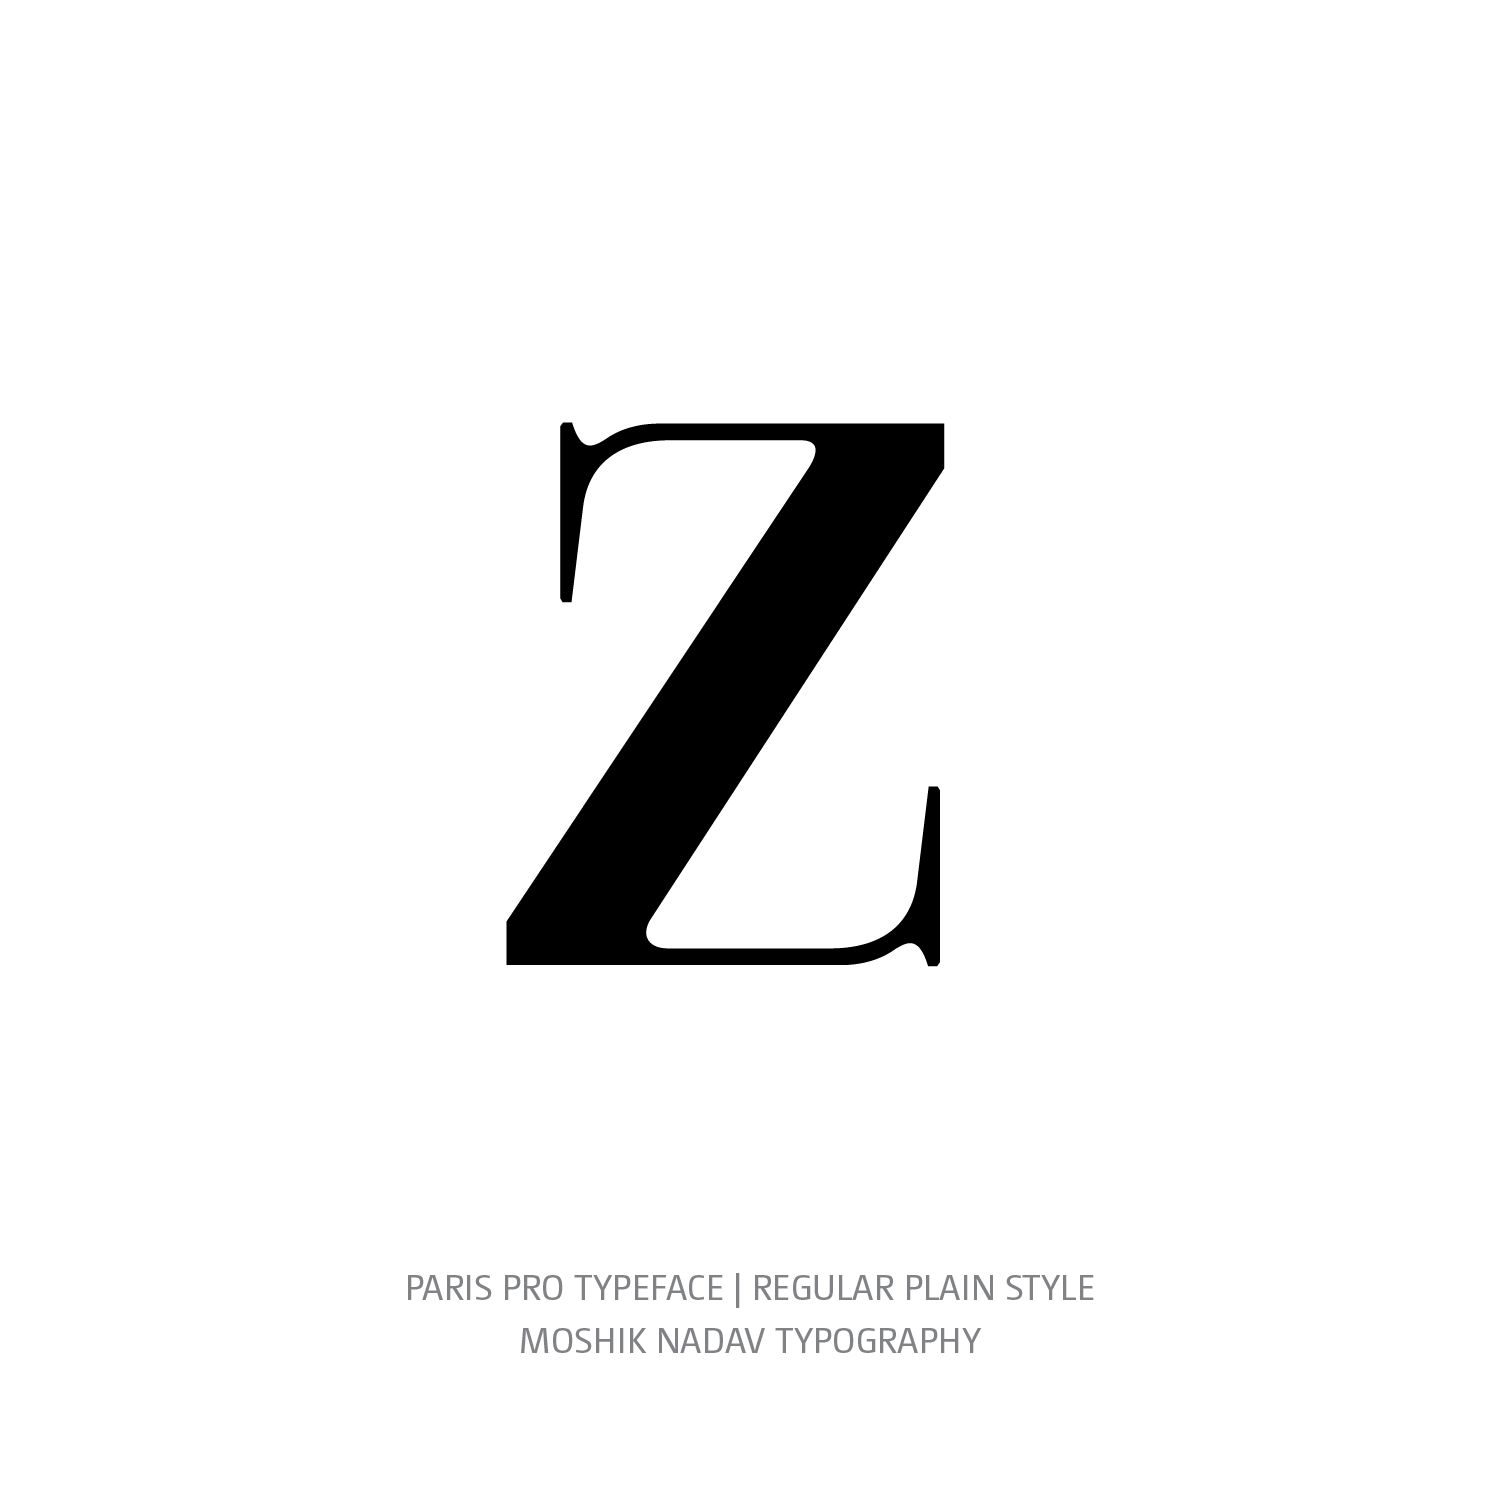 Lingerie Typeface Regular Plain z